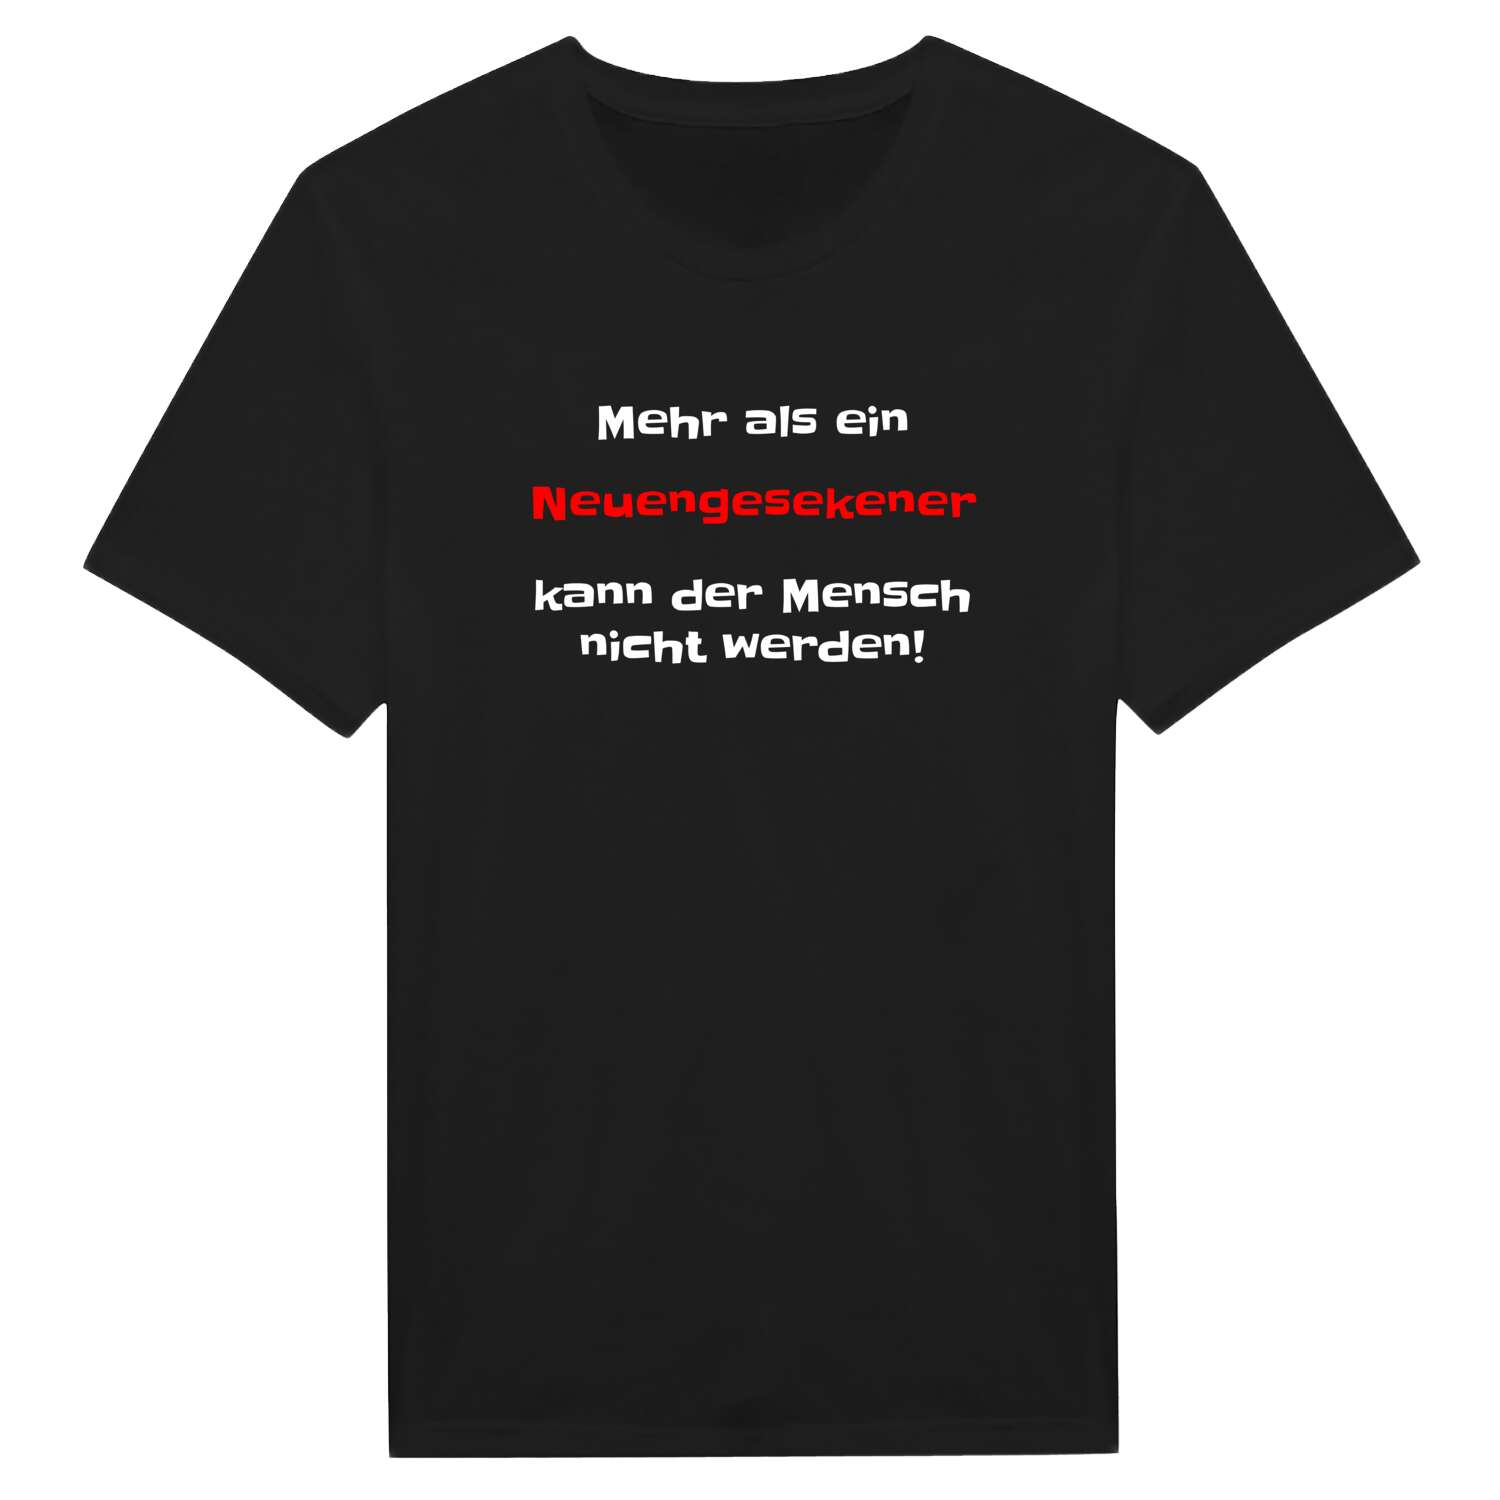 Neuengeseke T-Shirt »Mehr als ein«